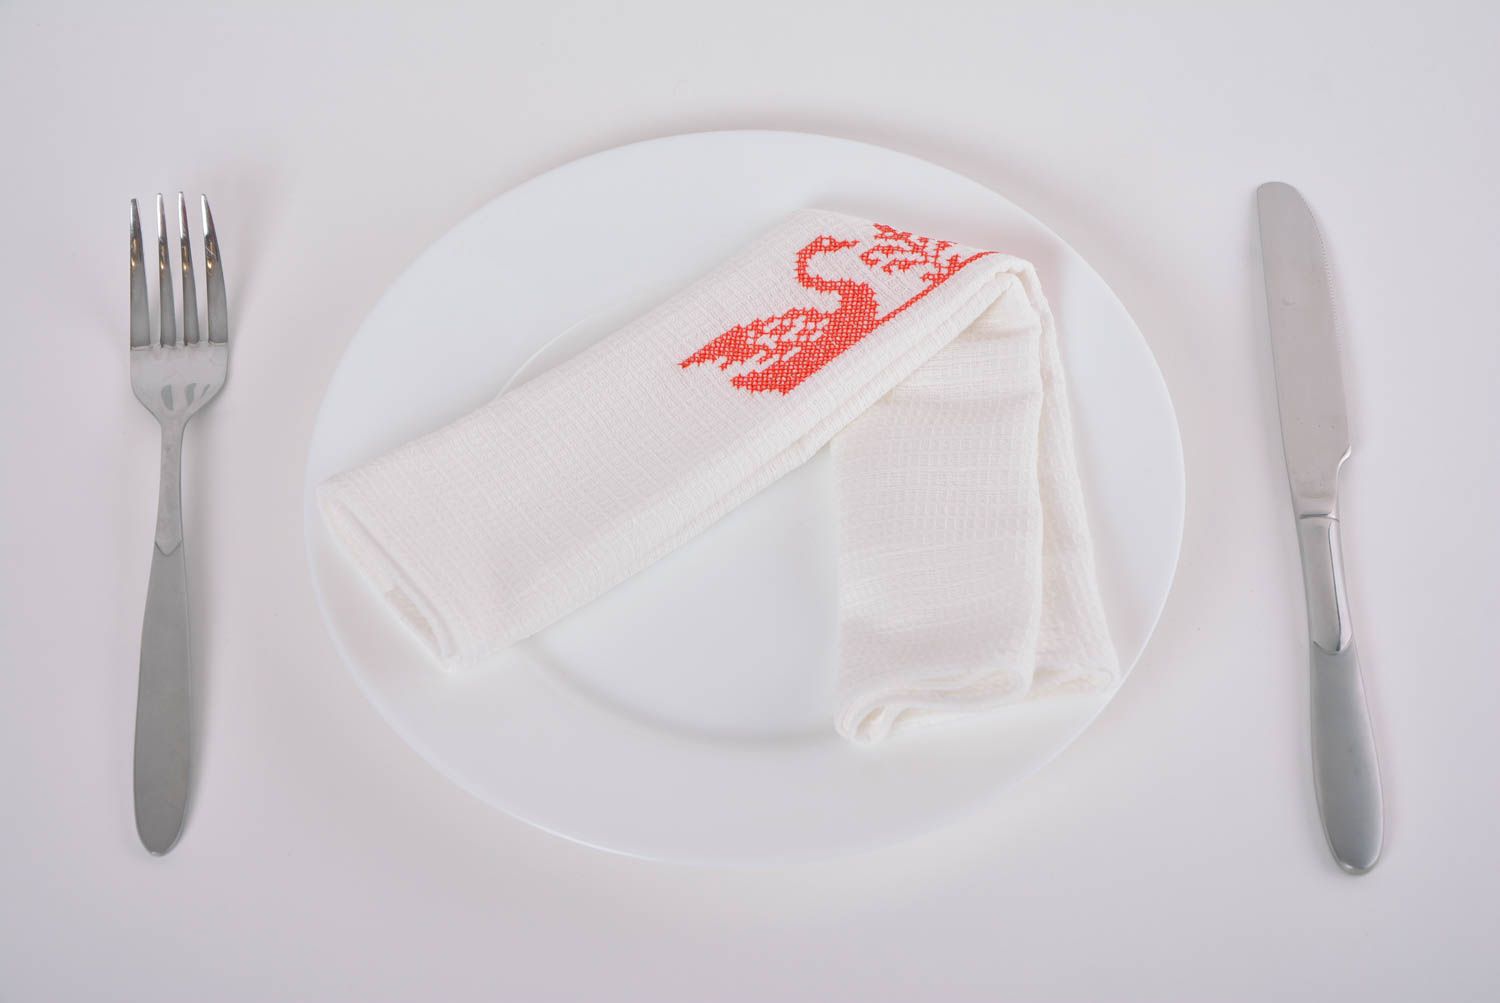 Serviette de table en coton blanche rectangulaire faite main brodée Cygnes photo 1